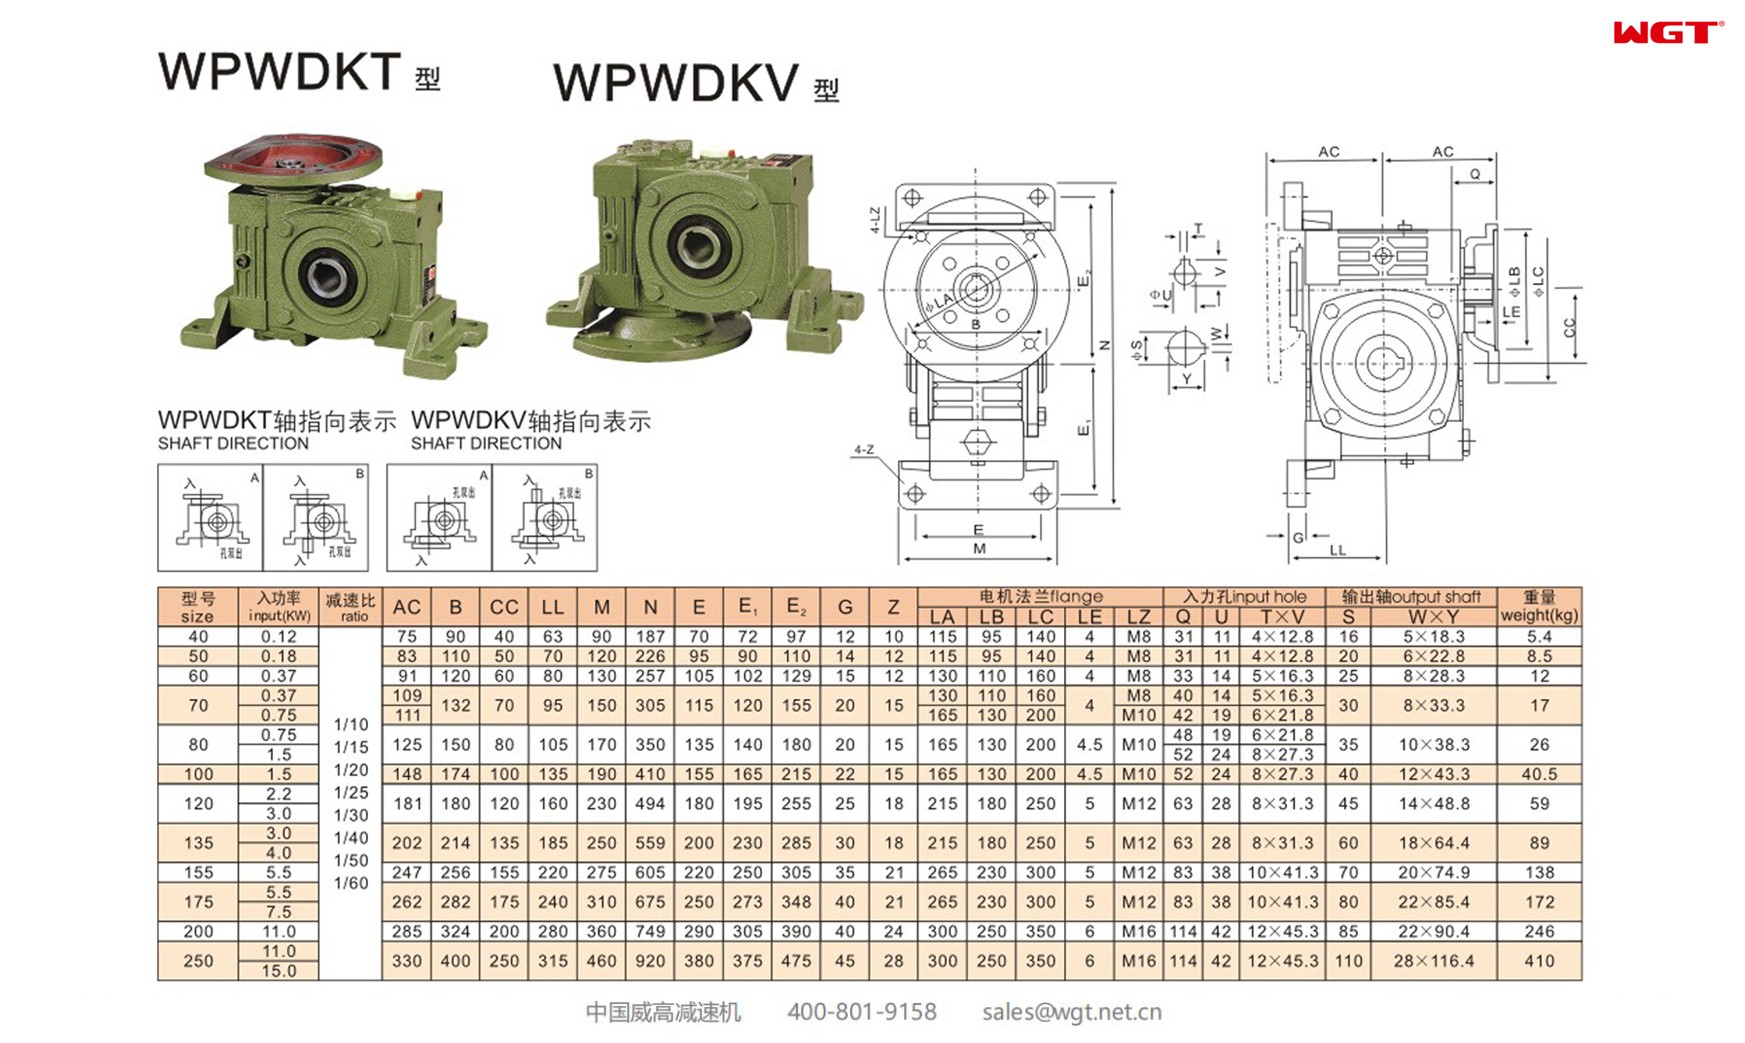 WPWDKV135 worm gear reducer universal speed reducer 